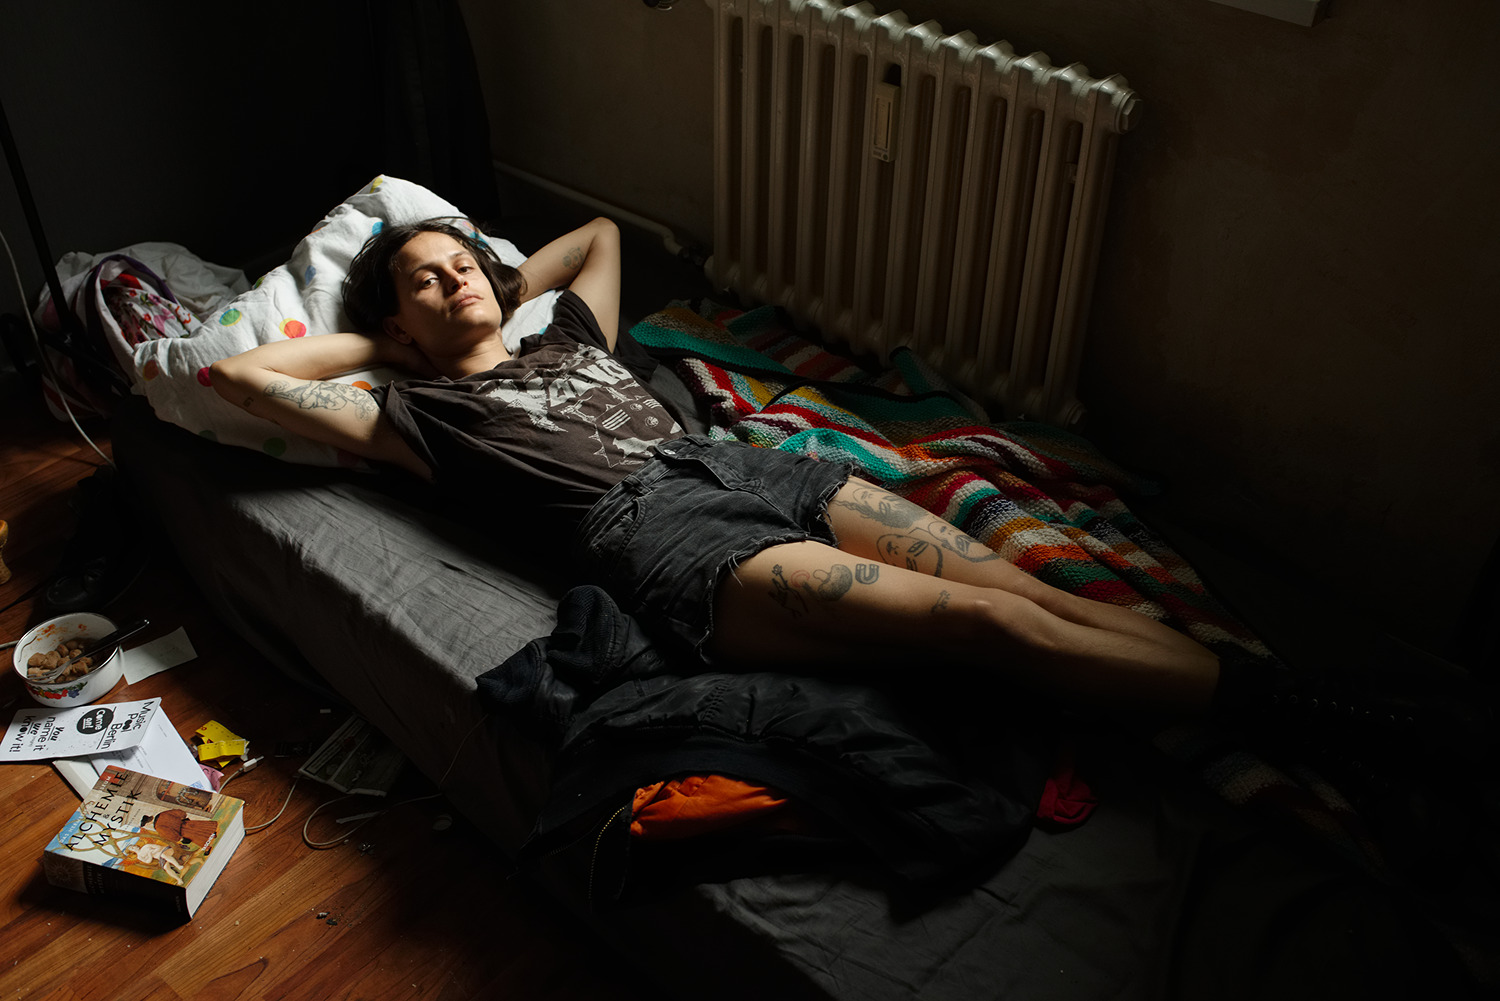 Victoria in her bed, Berlin, 2016